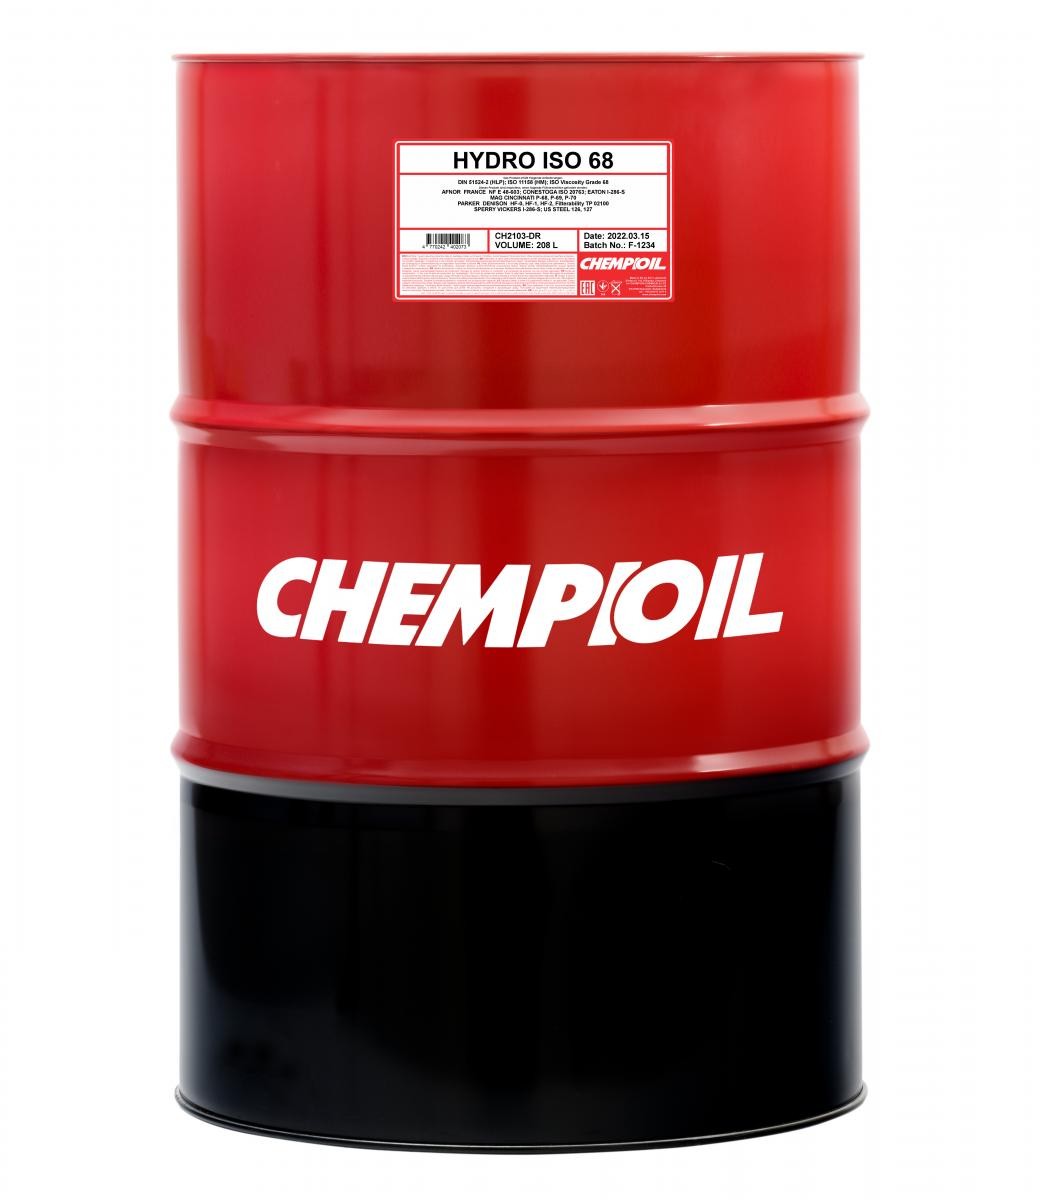 CHEMPIOIL Hydro, ISO 68 Inhalt: 208l DIN 51524-2 HLP, ISO 11158 HM Hydrauliköl CH2103-DR kaufen